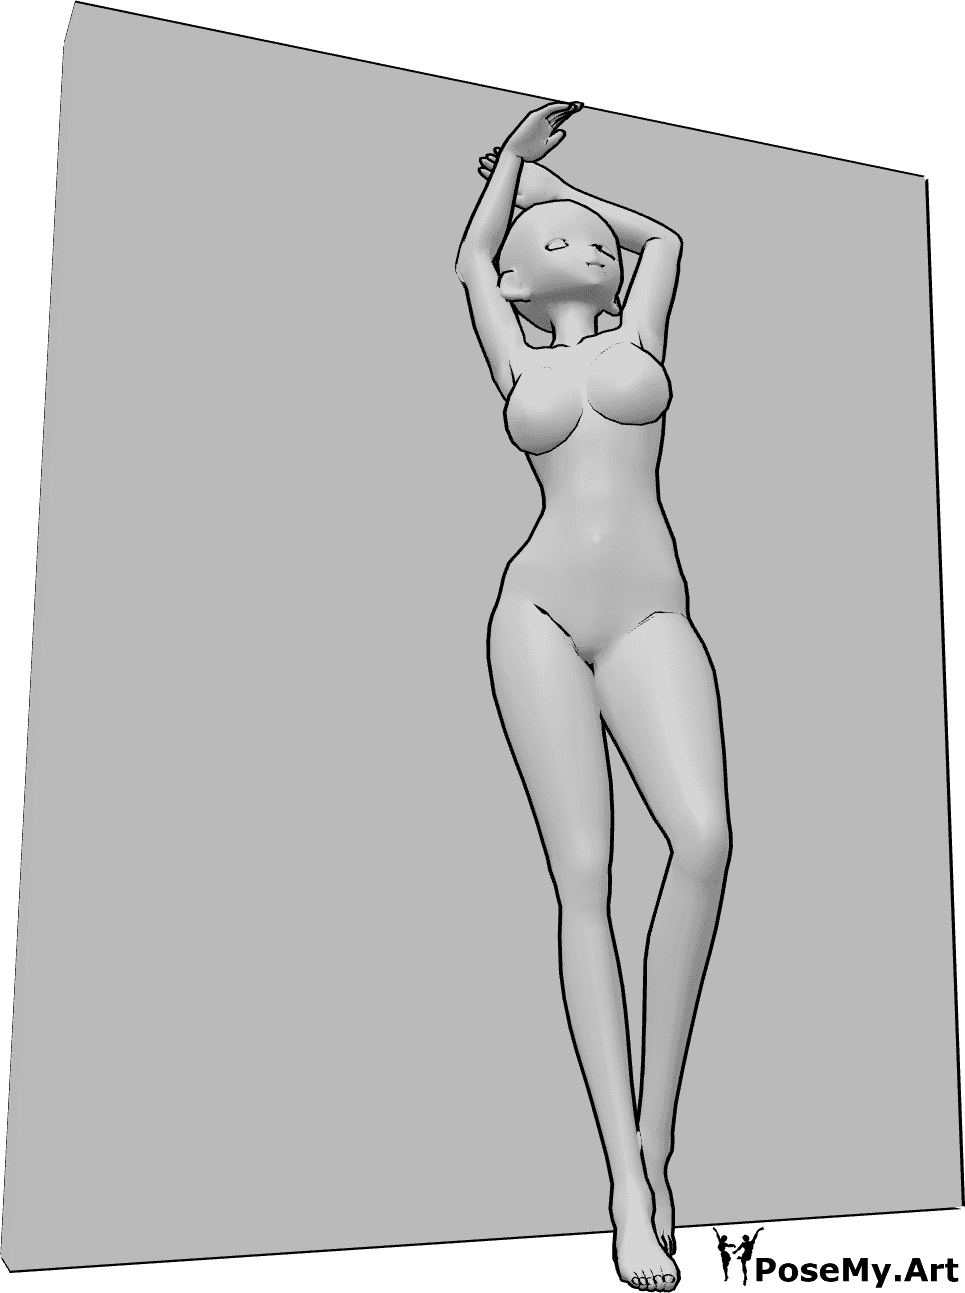 Riferimento alle pose- Anime sexy in posa appoggiata - Una donna antropomorfa è appoggiata al muro e in posa sexy, con lo sguardo rivolto verso l'alto